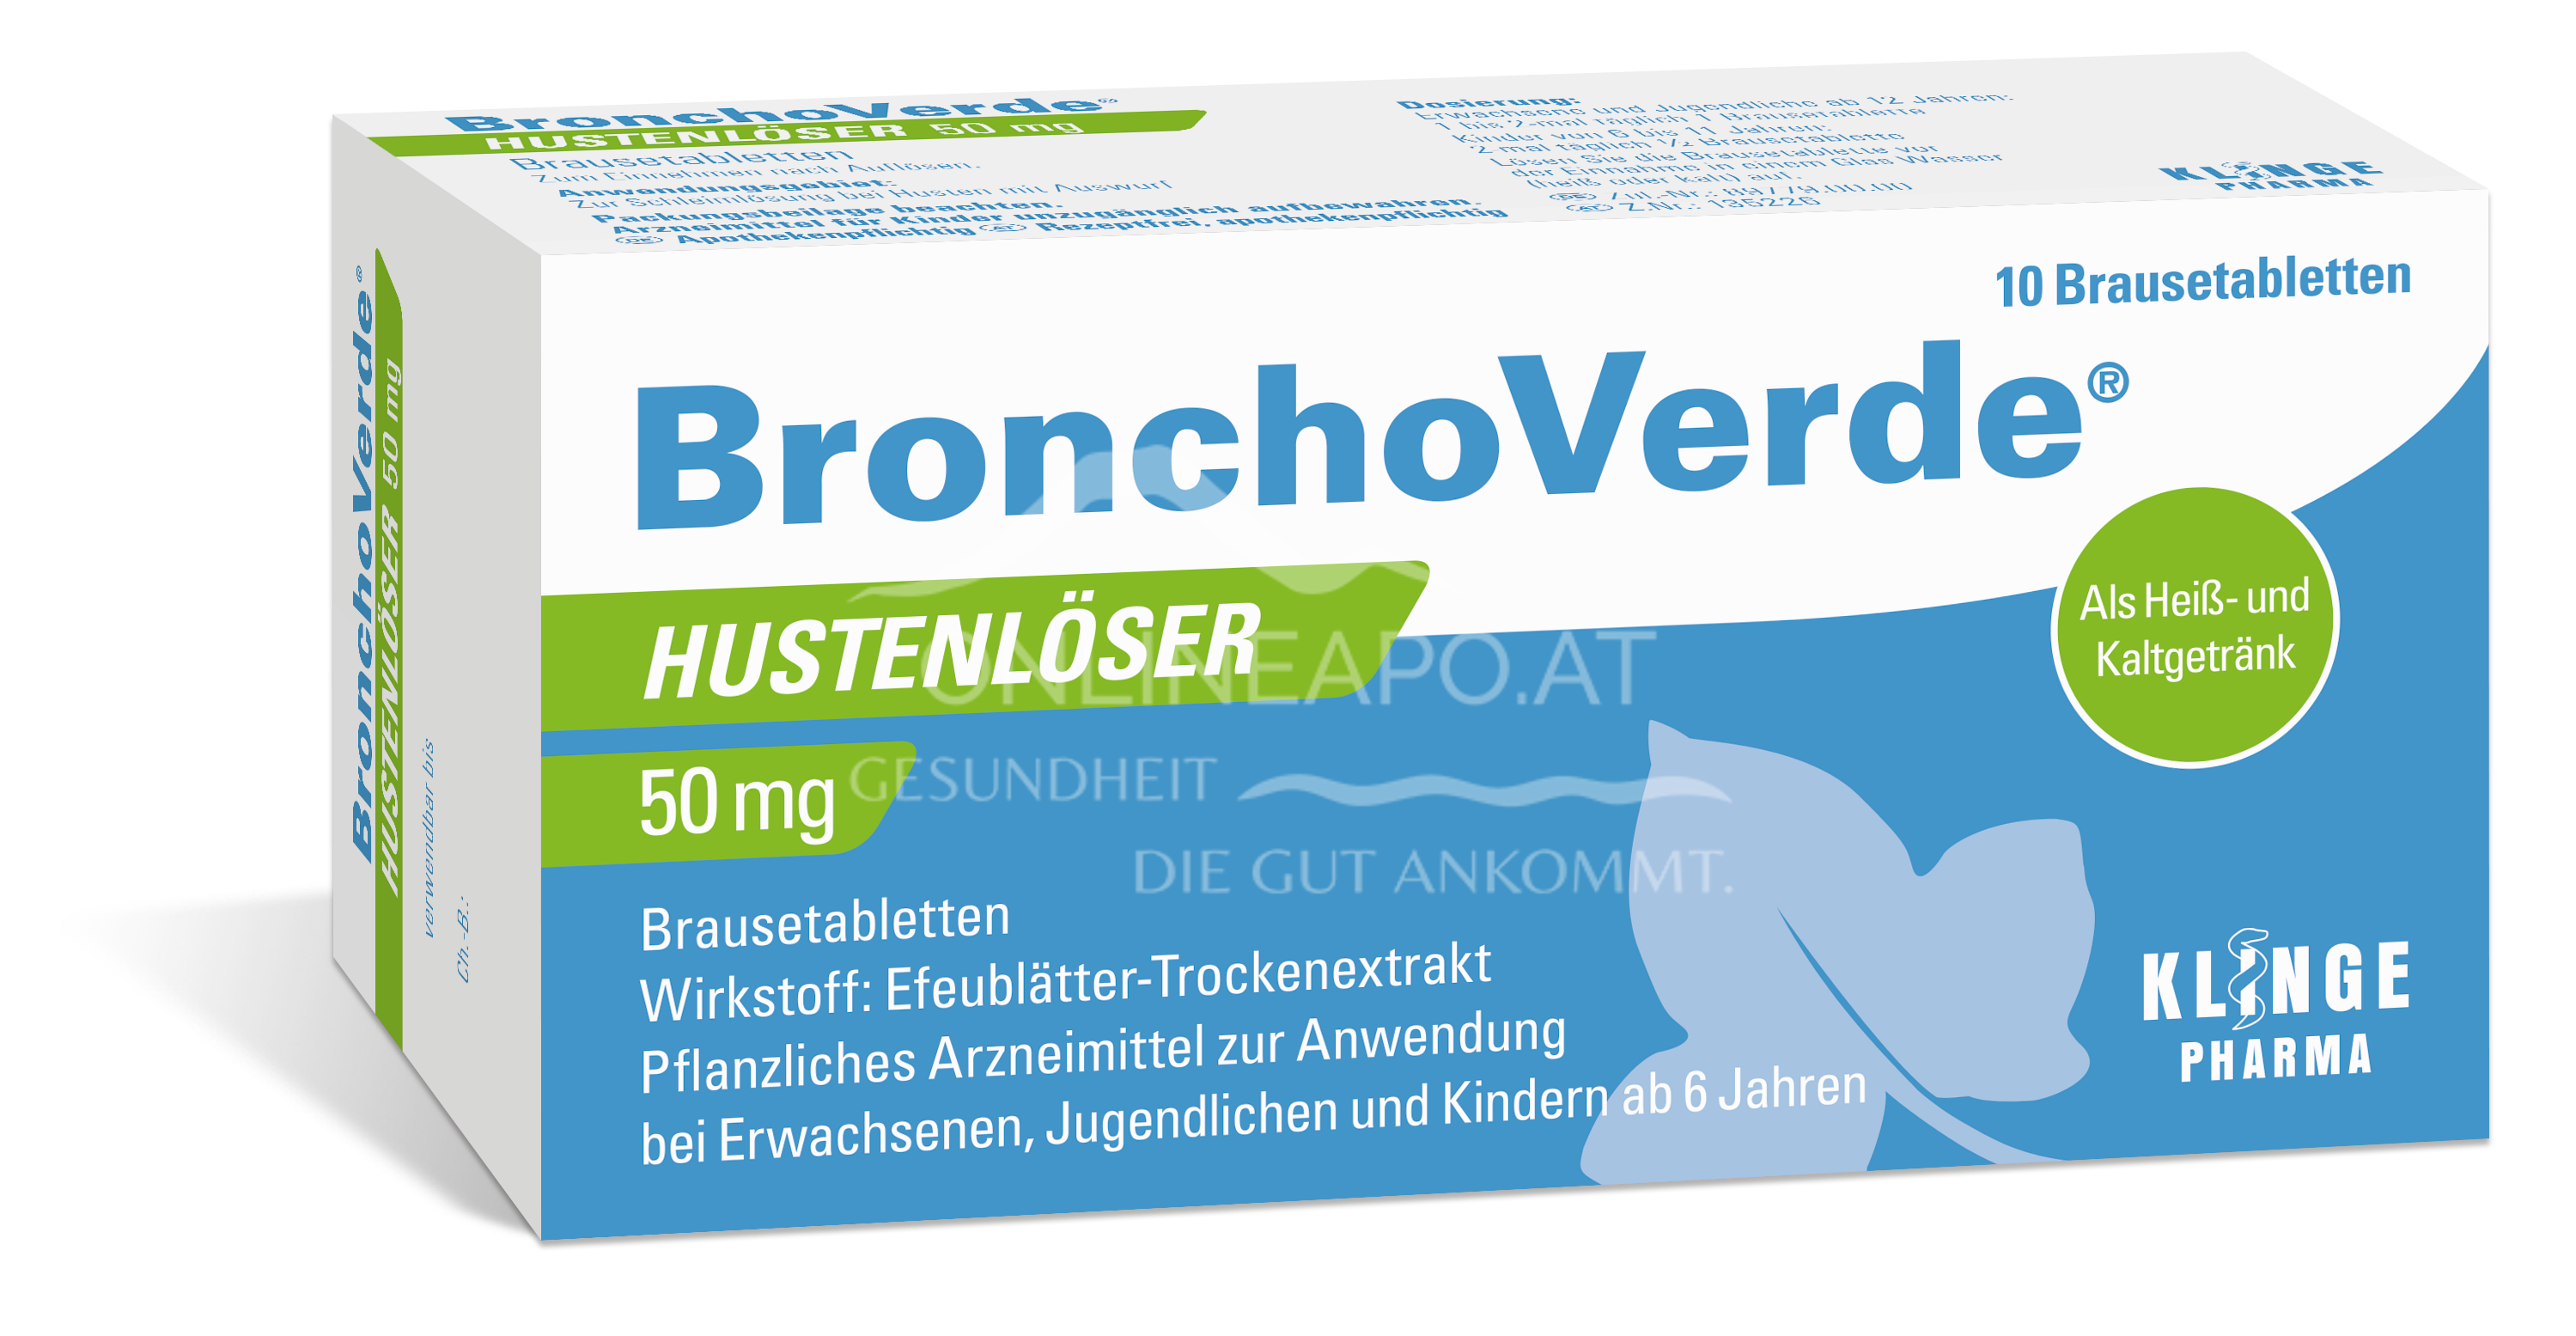 BronchoVerde® Hustenlöser 50 mg Brausetabletten